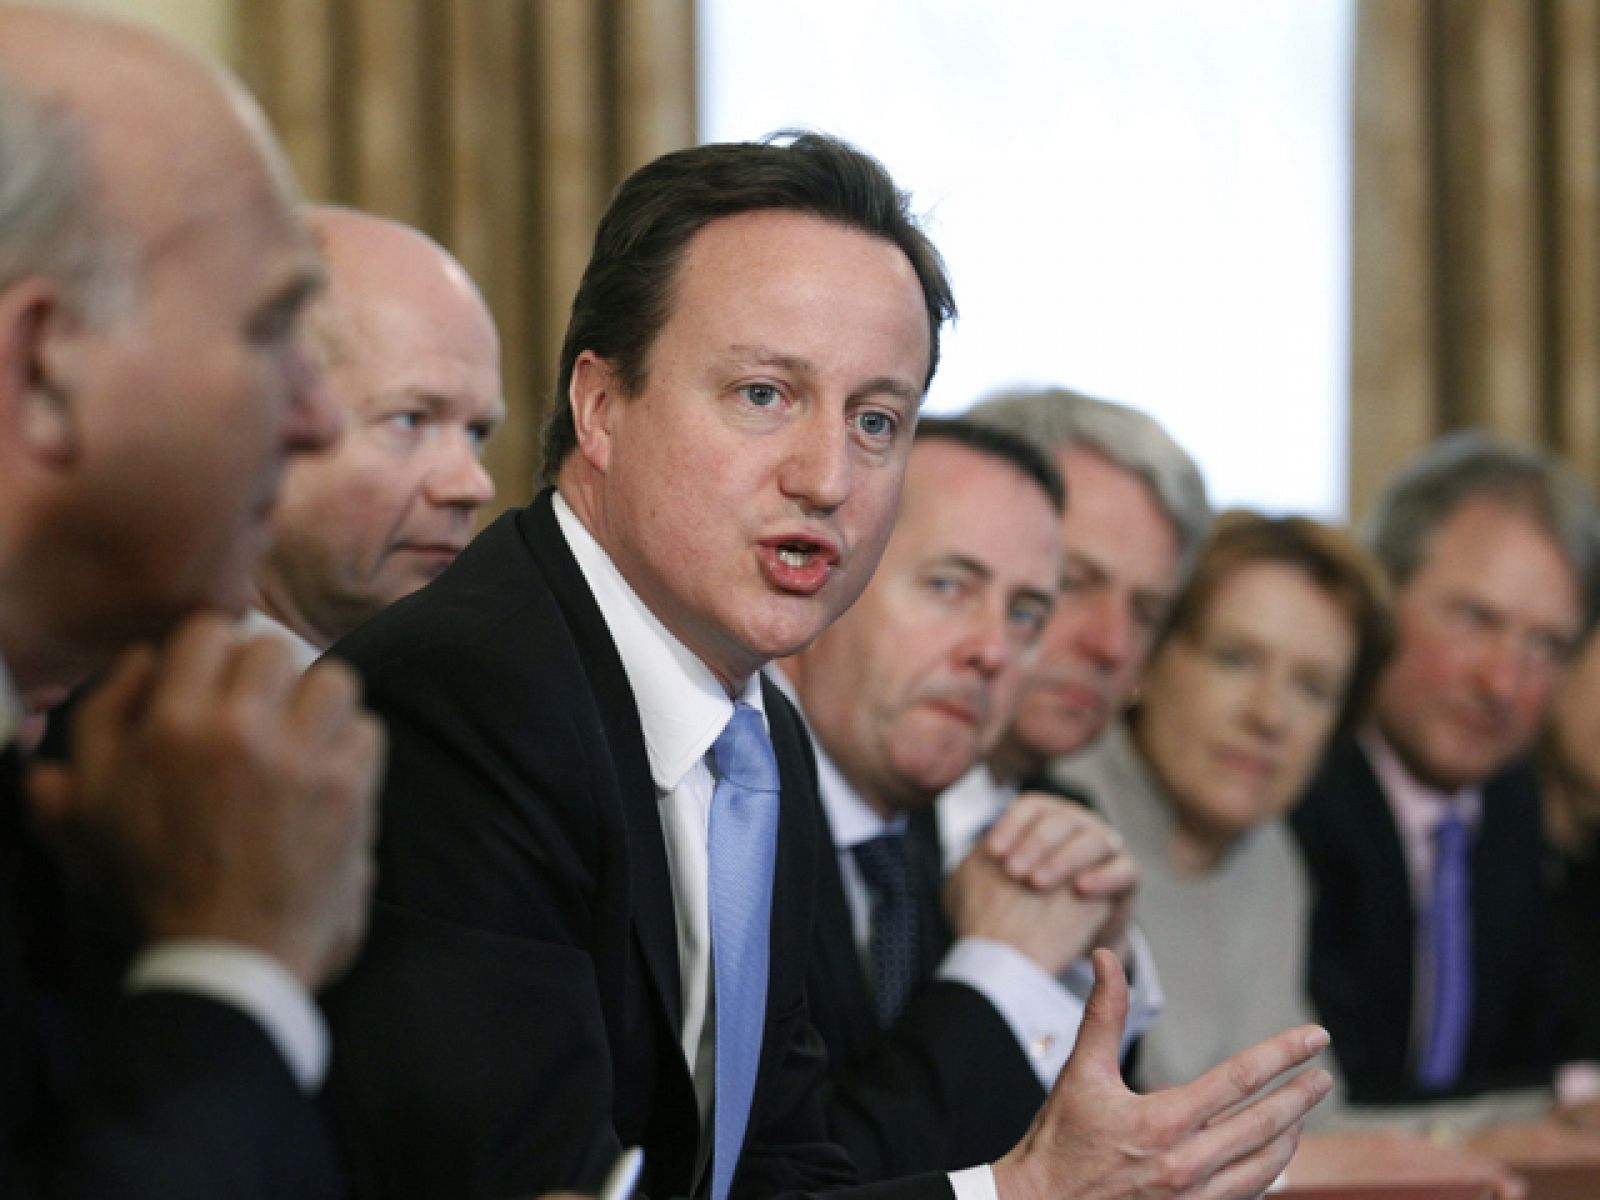 En el Reino Unido, el nuevo gobierno del conservador David Cameron ha adoptado como primera medida bajarse el sueldo un cinco por ciento, un anticipo del anunciado plan de recorte del gasto público.